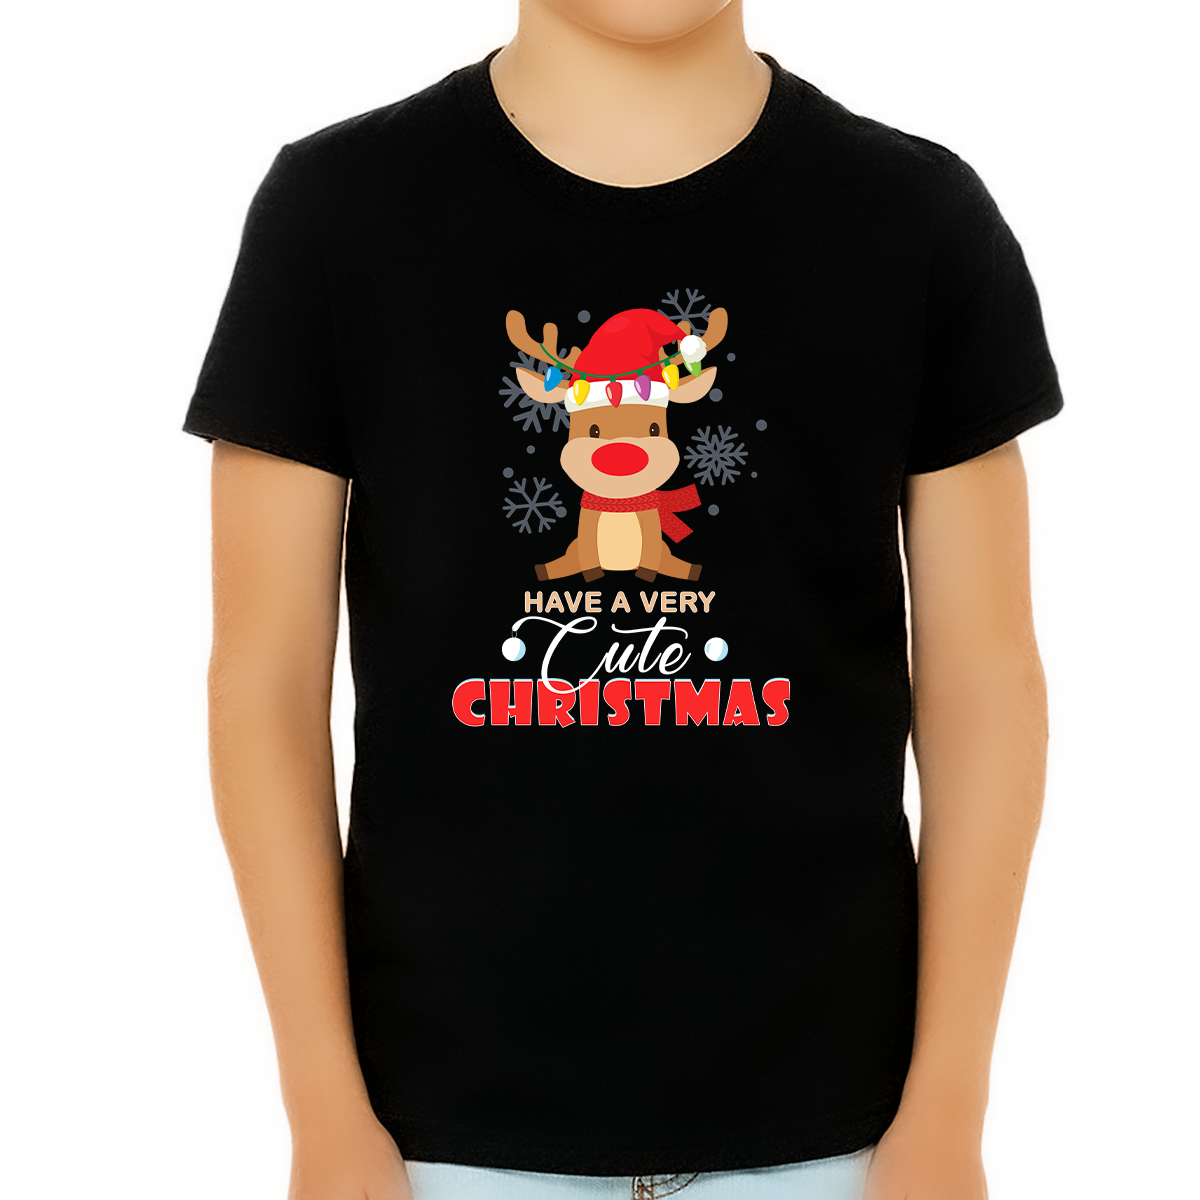 Boys Christmas Shirt Cute Christmas Top Christmas Shirts for Kids Cute Baby Reindeer Shirts